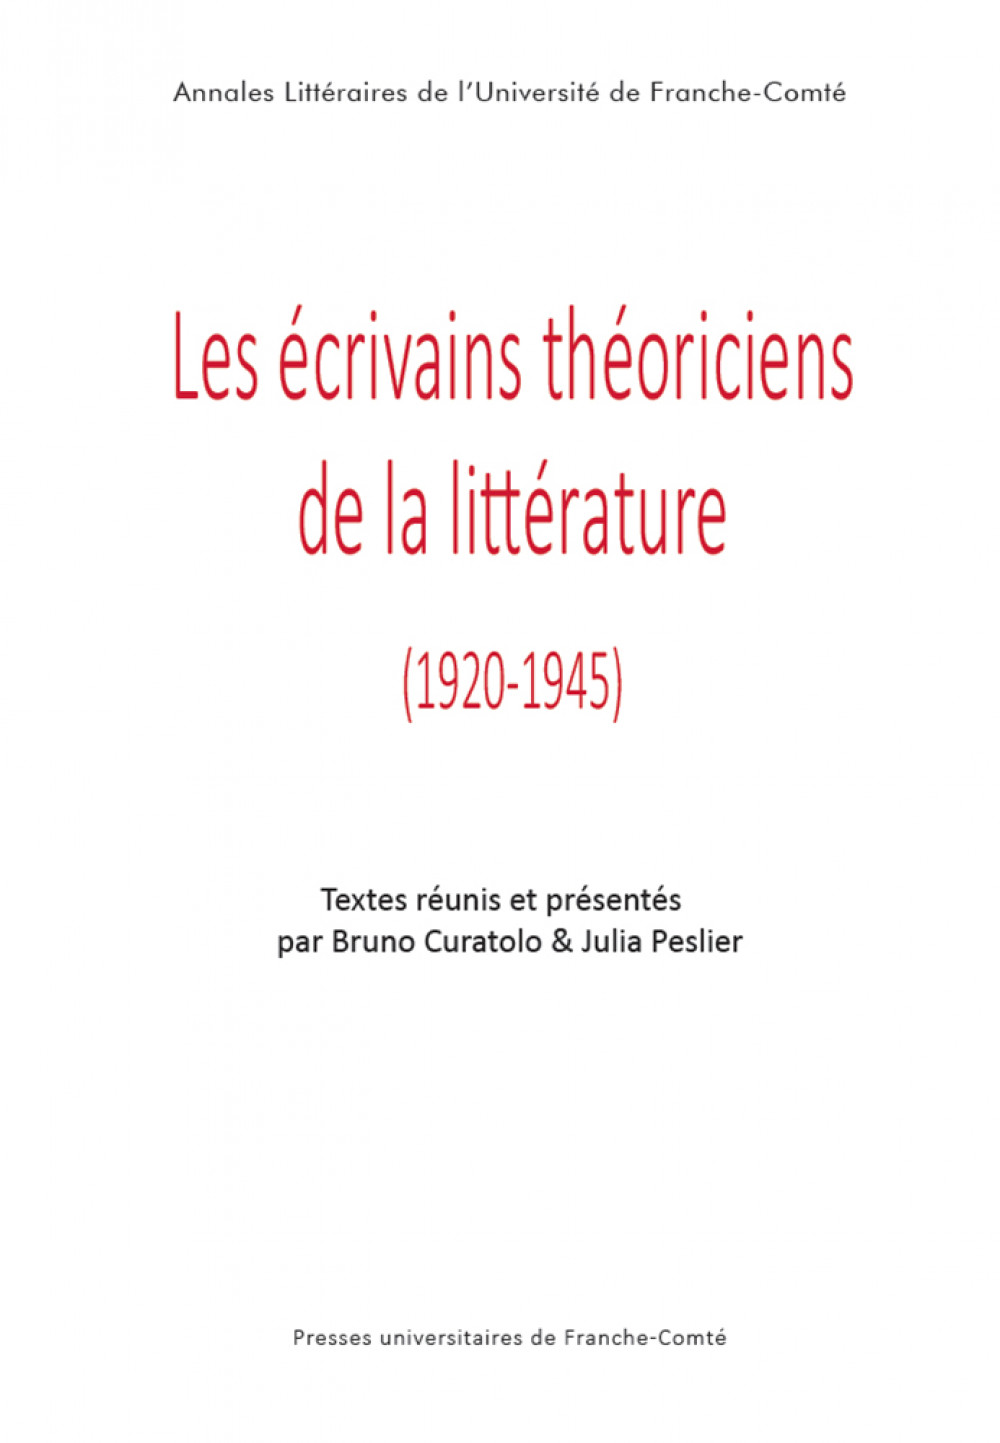 Les écrivains théoriciens de la littérature (1920-1945)